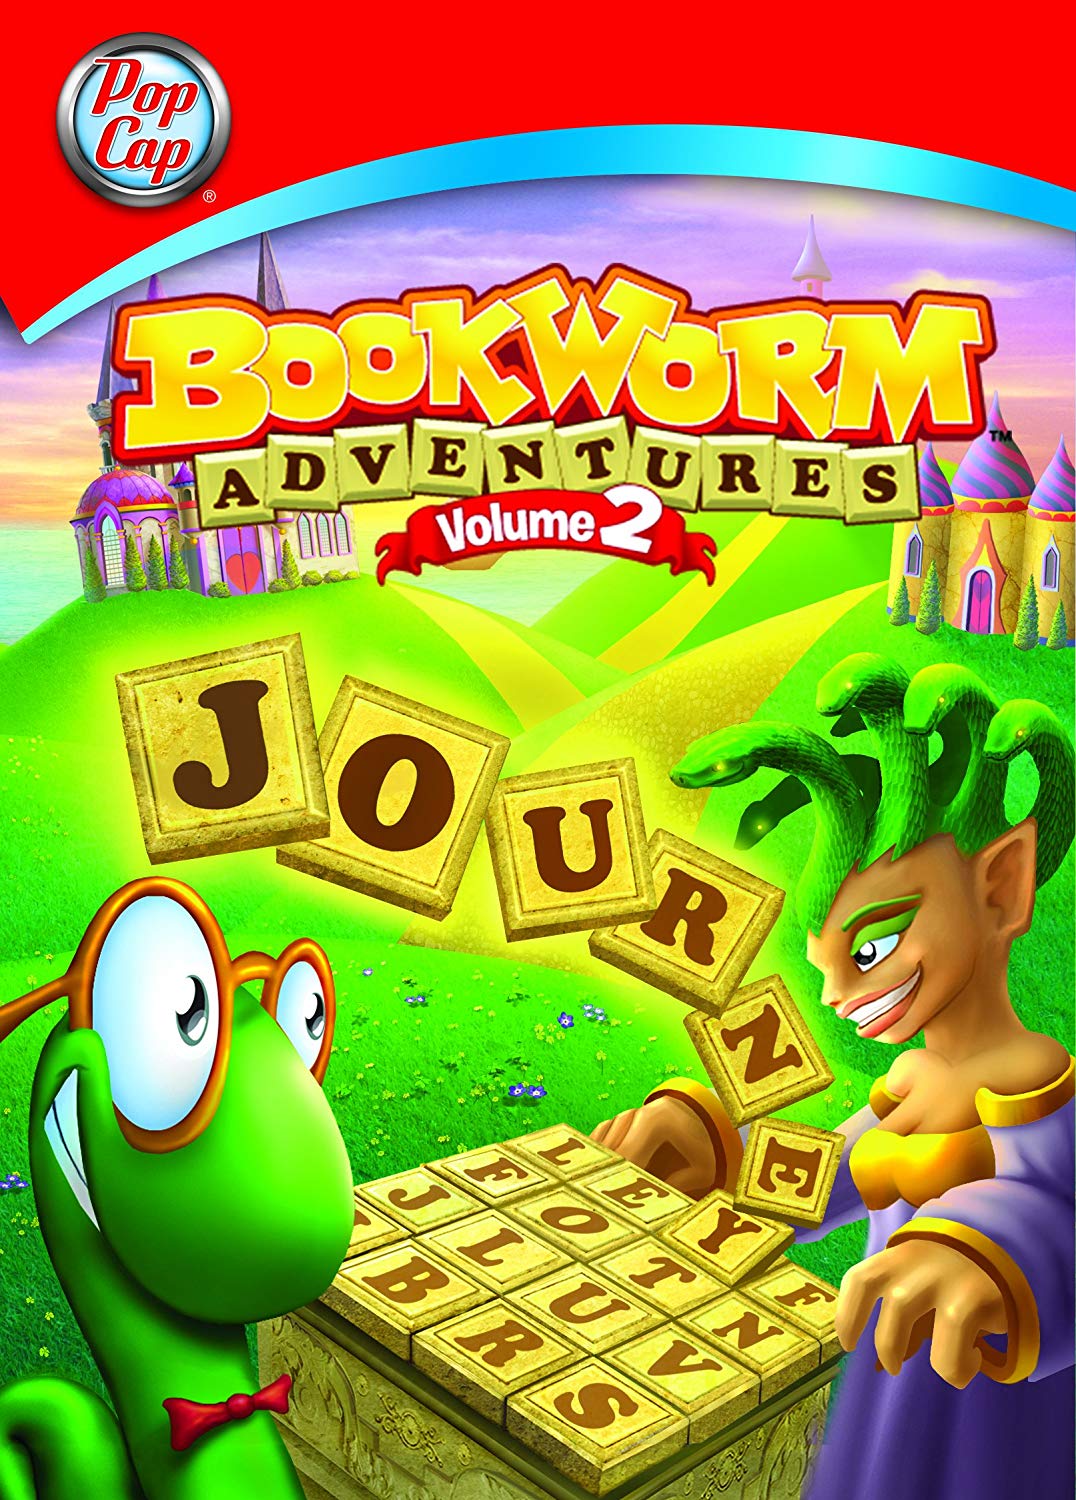 play bookworm adventures online